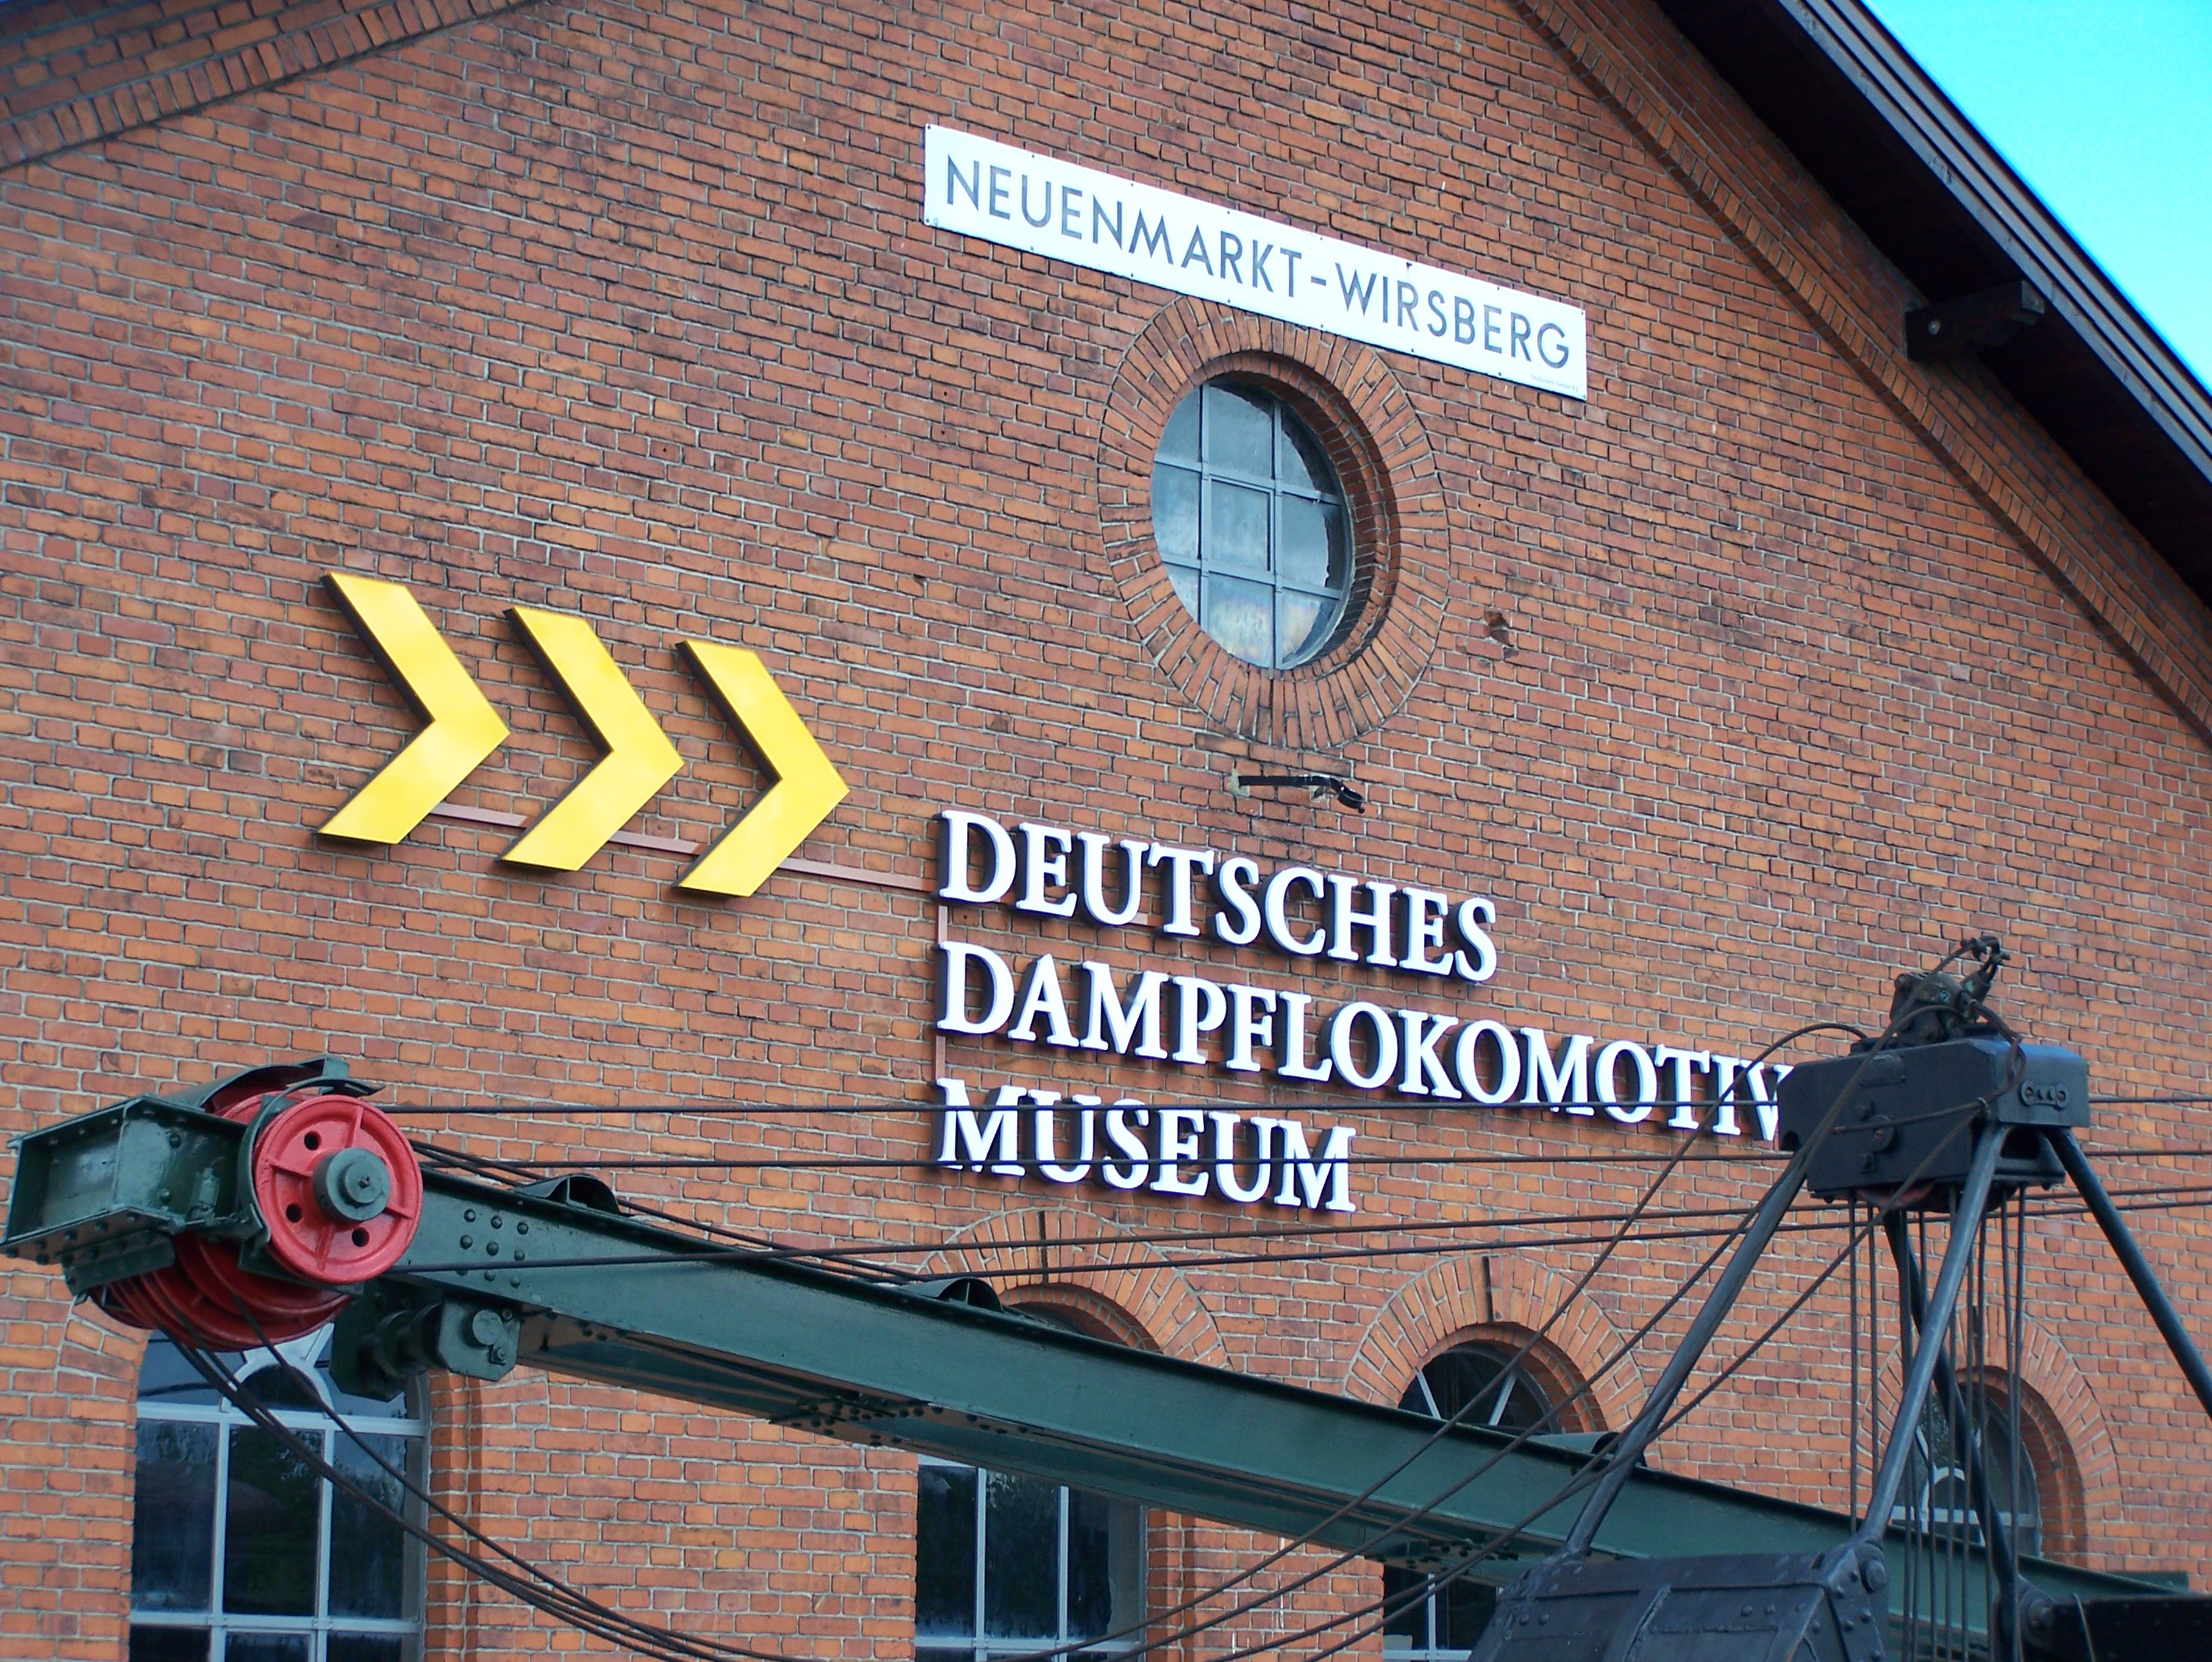 Bild 17 Deutsches Dampflokomotivmuseum in Neuenmarkt